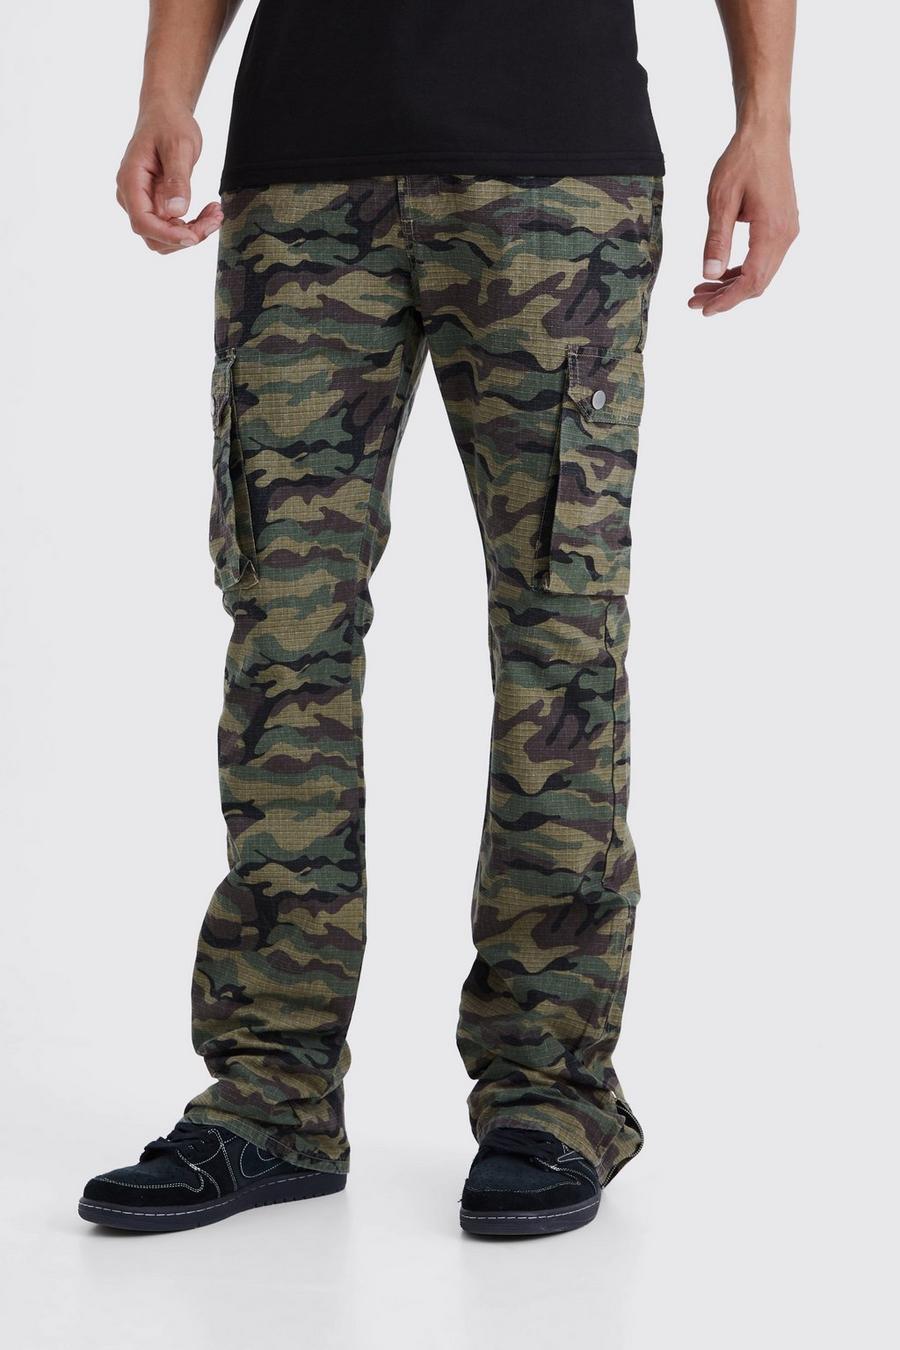 Pantaloni Cargo Tall Slim Fit in nylon ripstop in nylon ripstop con pieghe sul fondo, zip e inserti in fantasia militare, Khaki image number 1